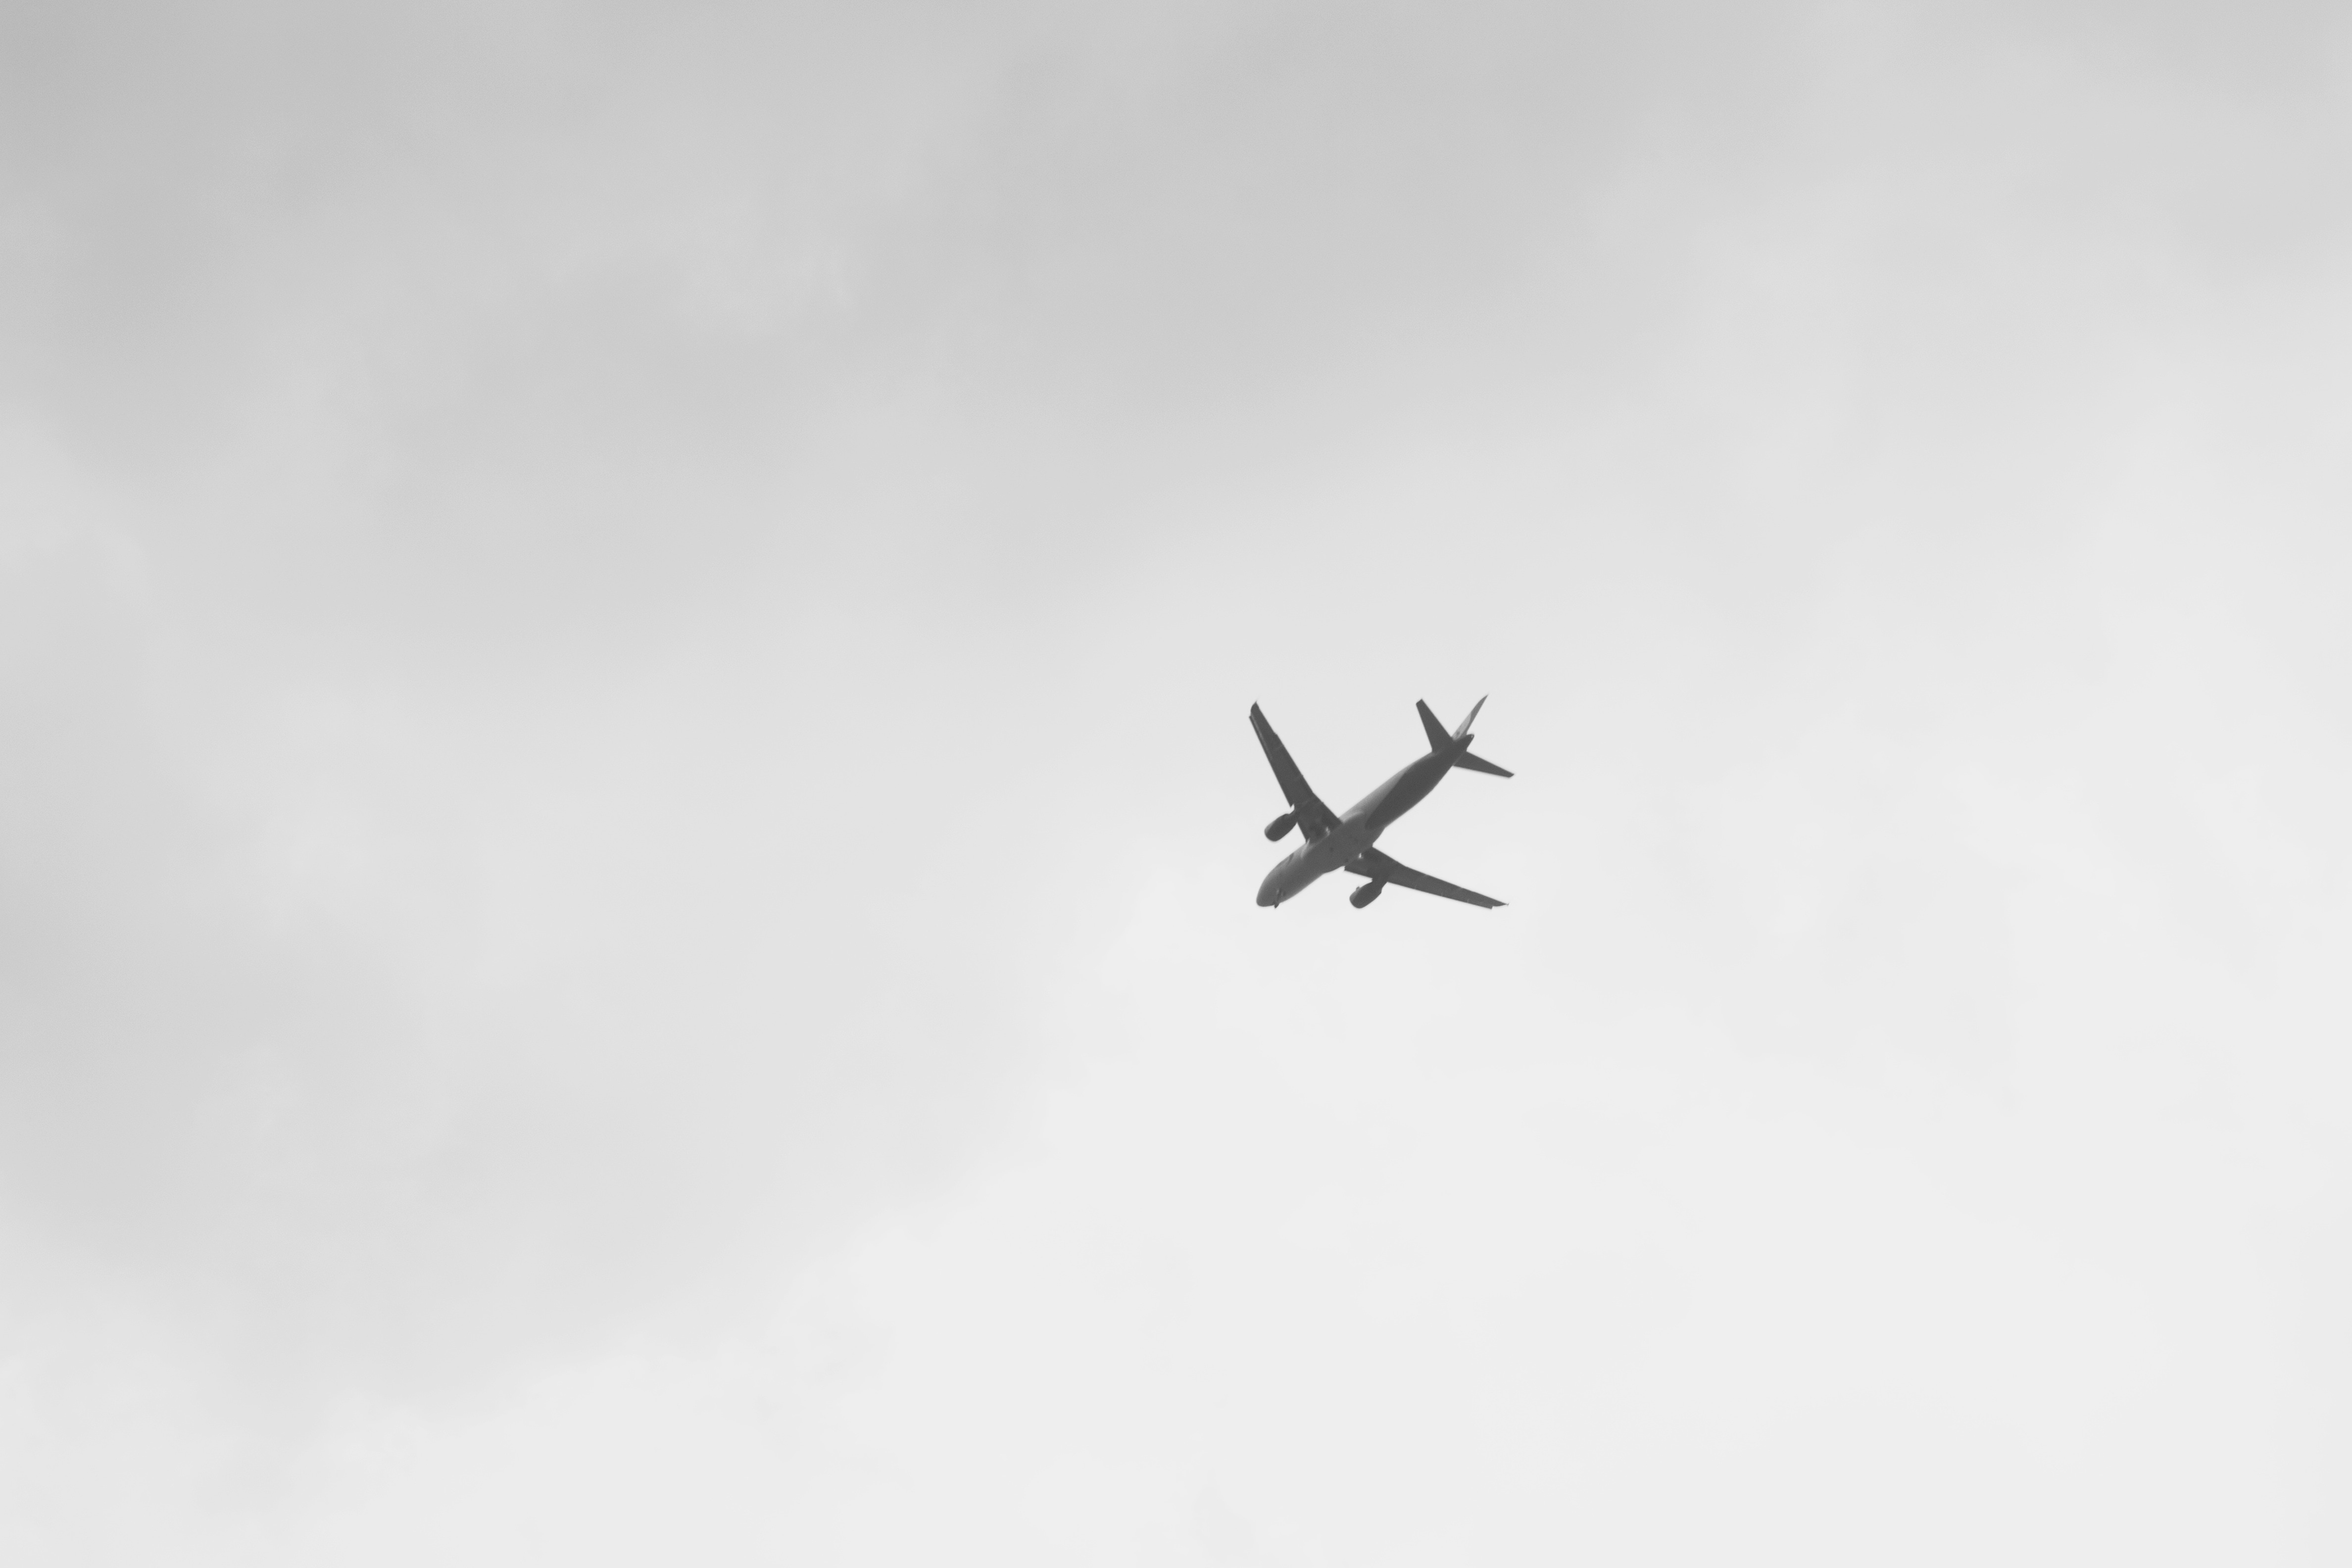 Plane In White Sky - 4752x3168 Wallpaper 